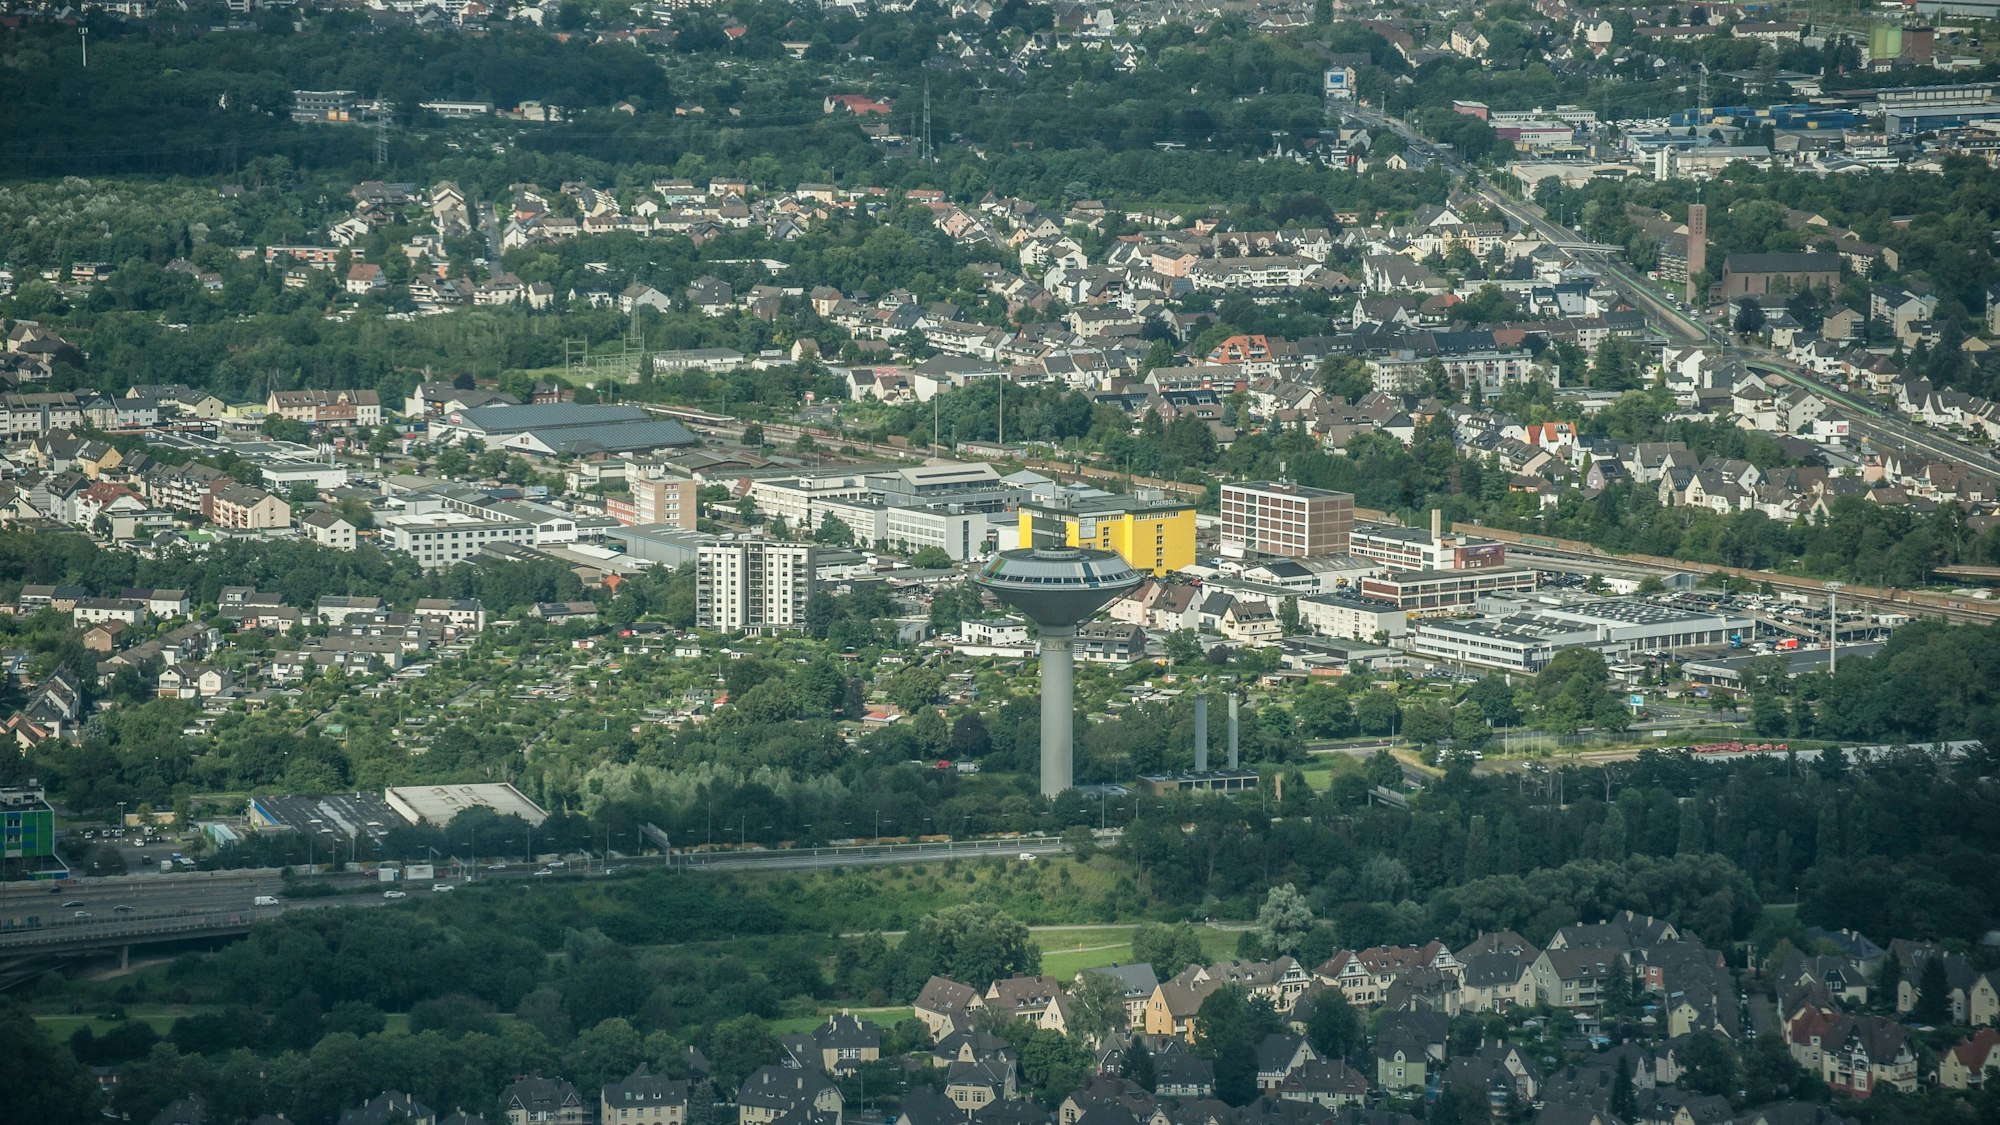 Luftbild von Leverkusen mit dem Wasserturm in der Mitte